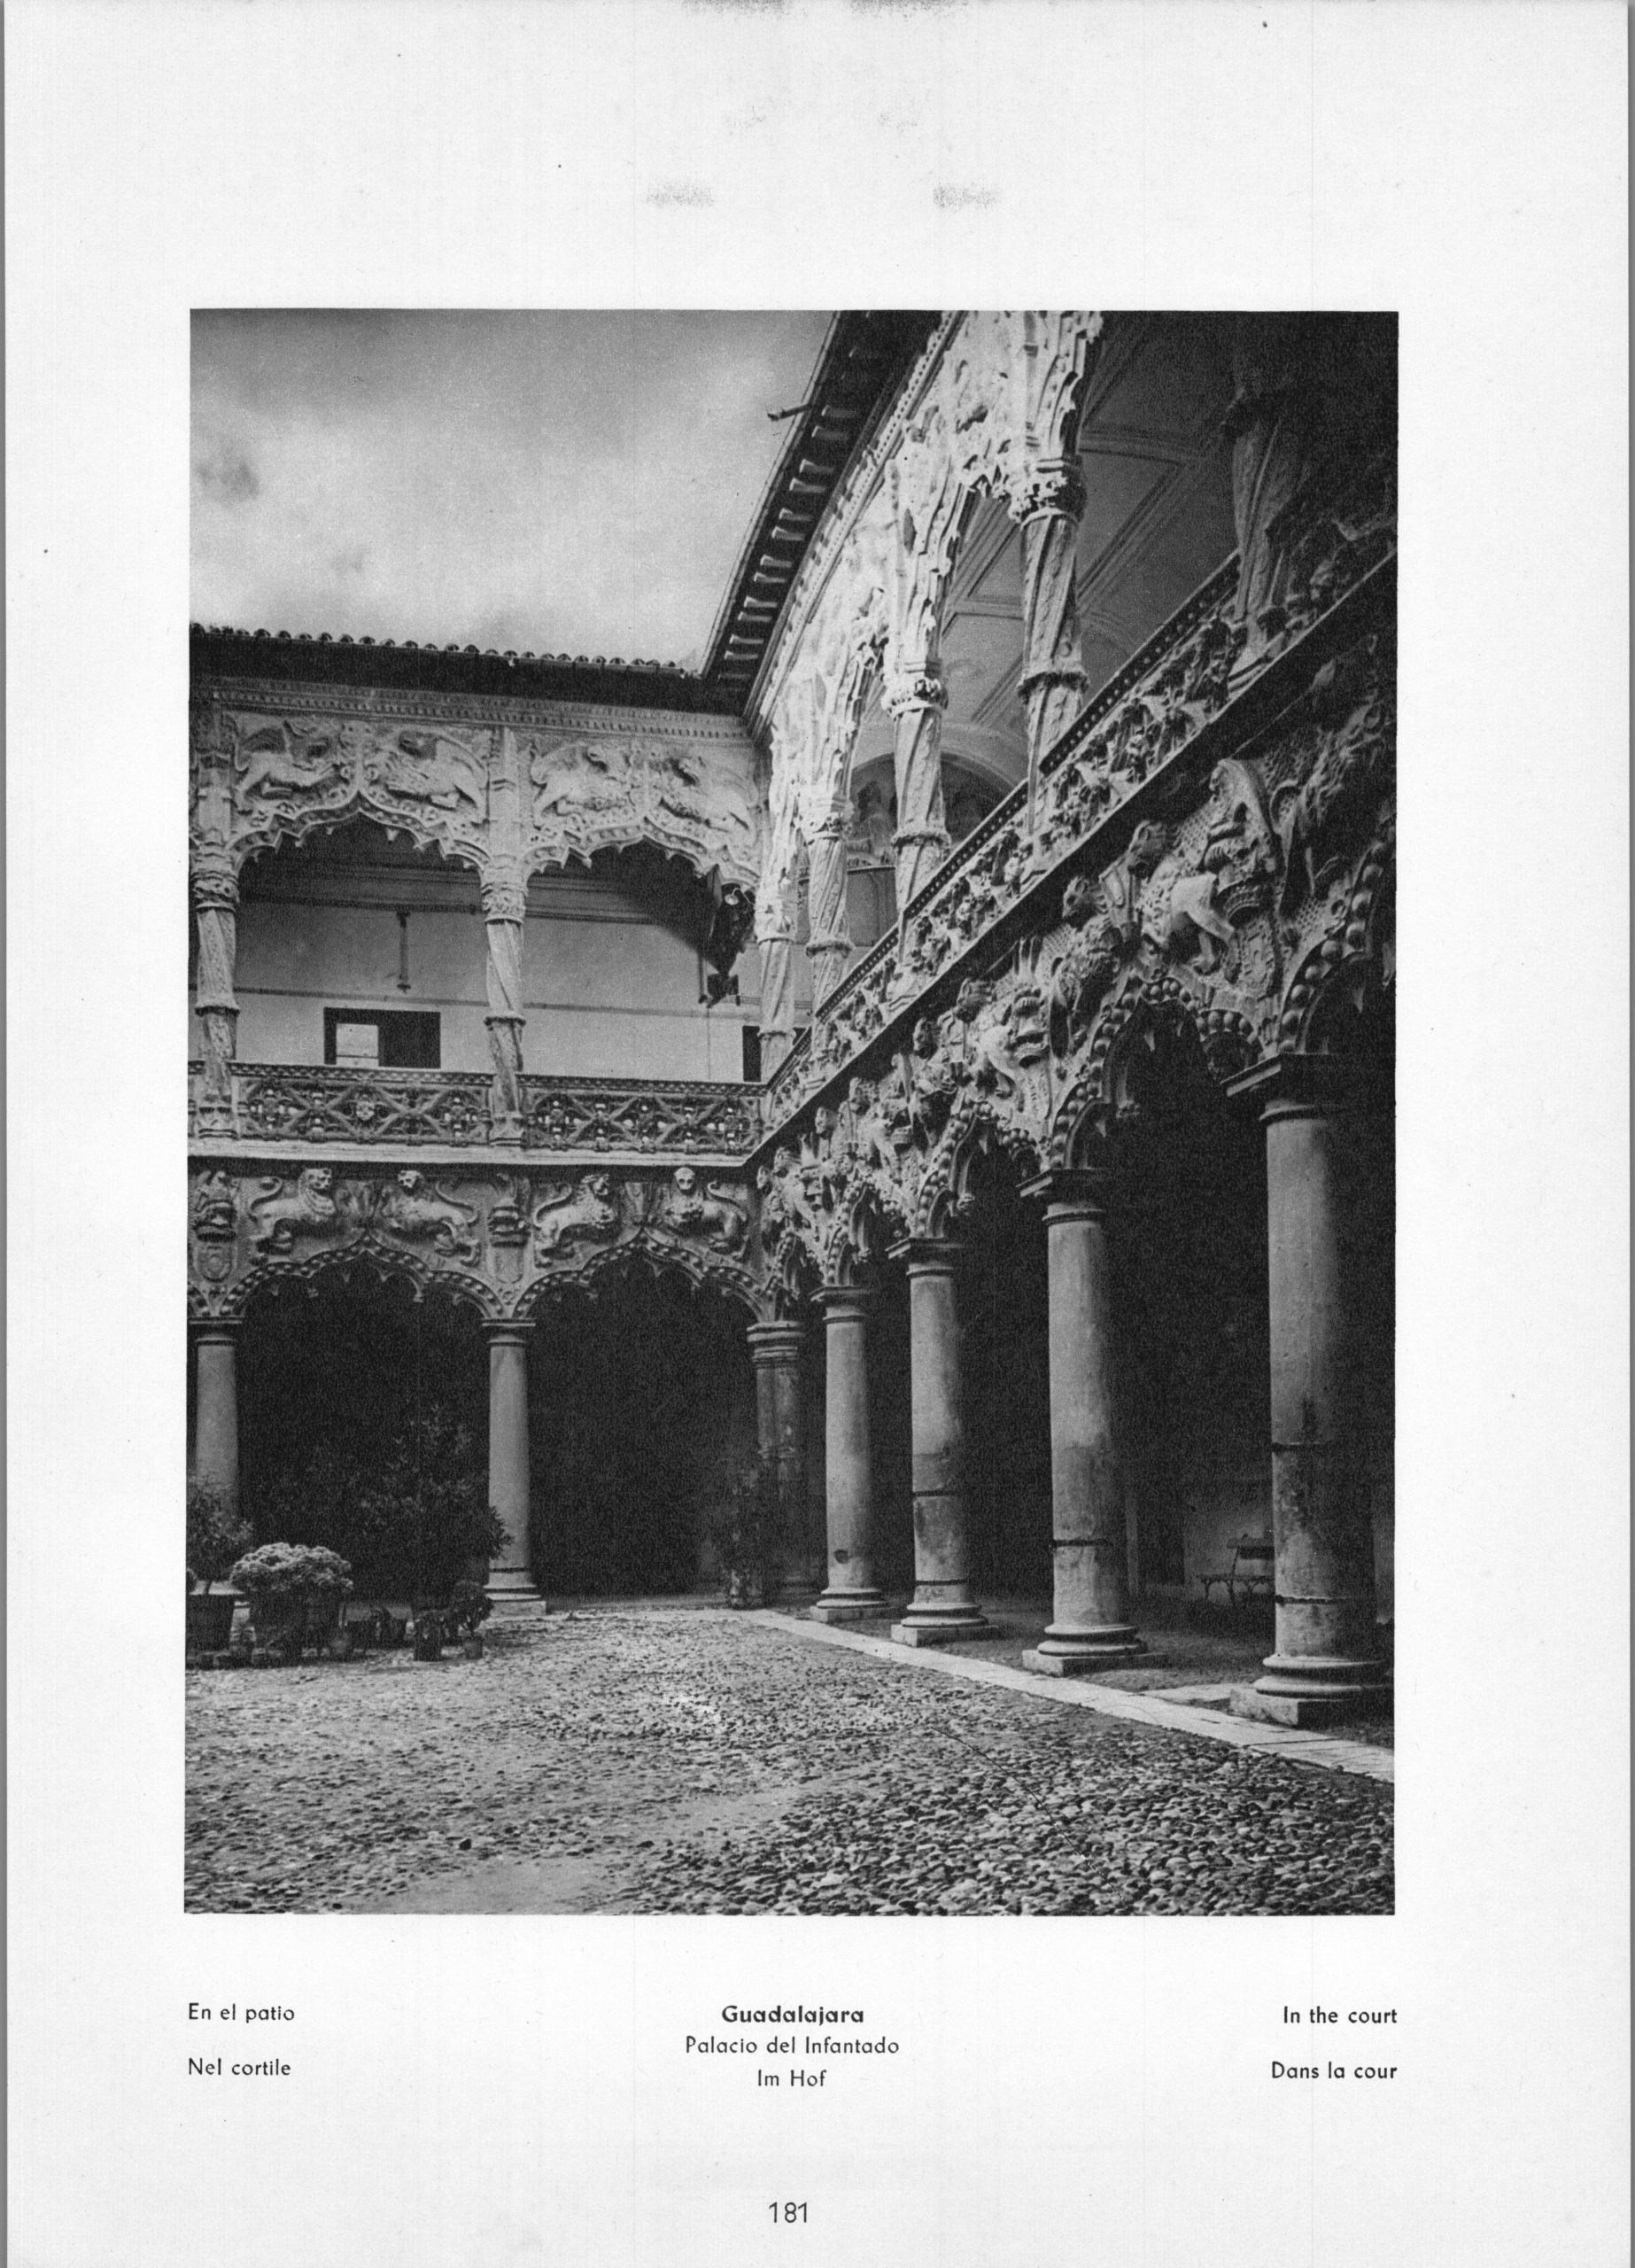 Guadalajara Palacio del Infantado - In the court